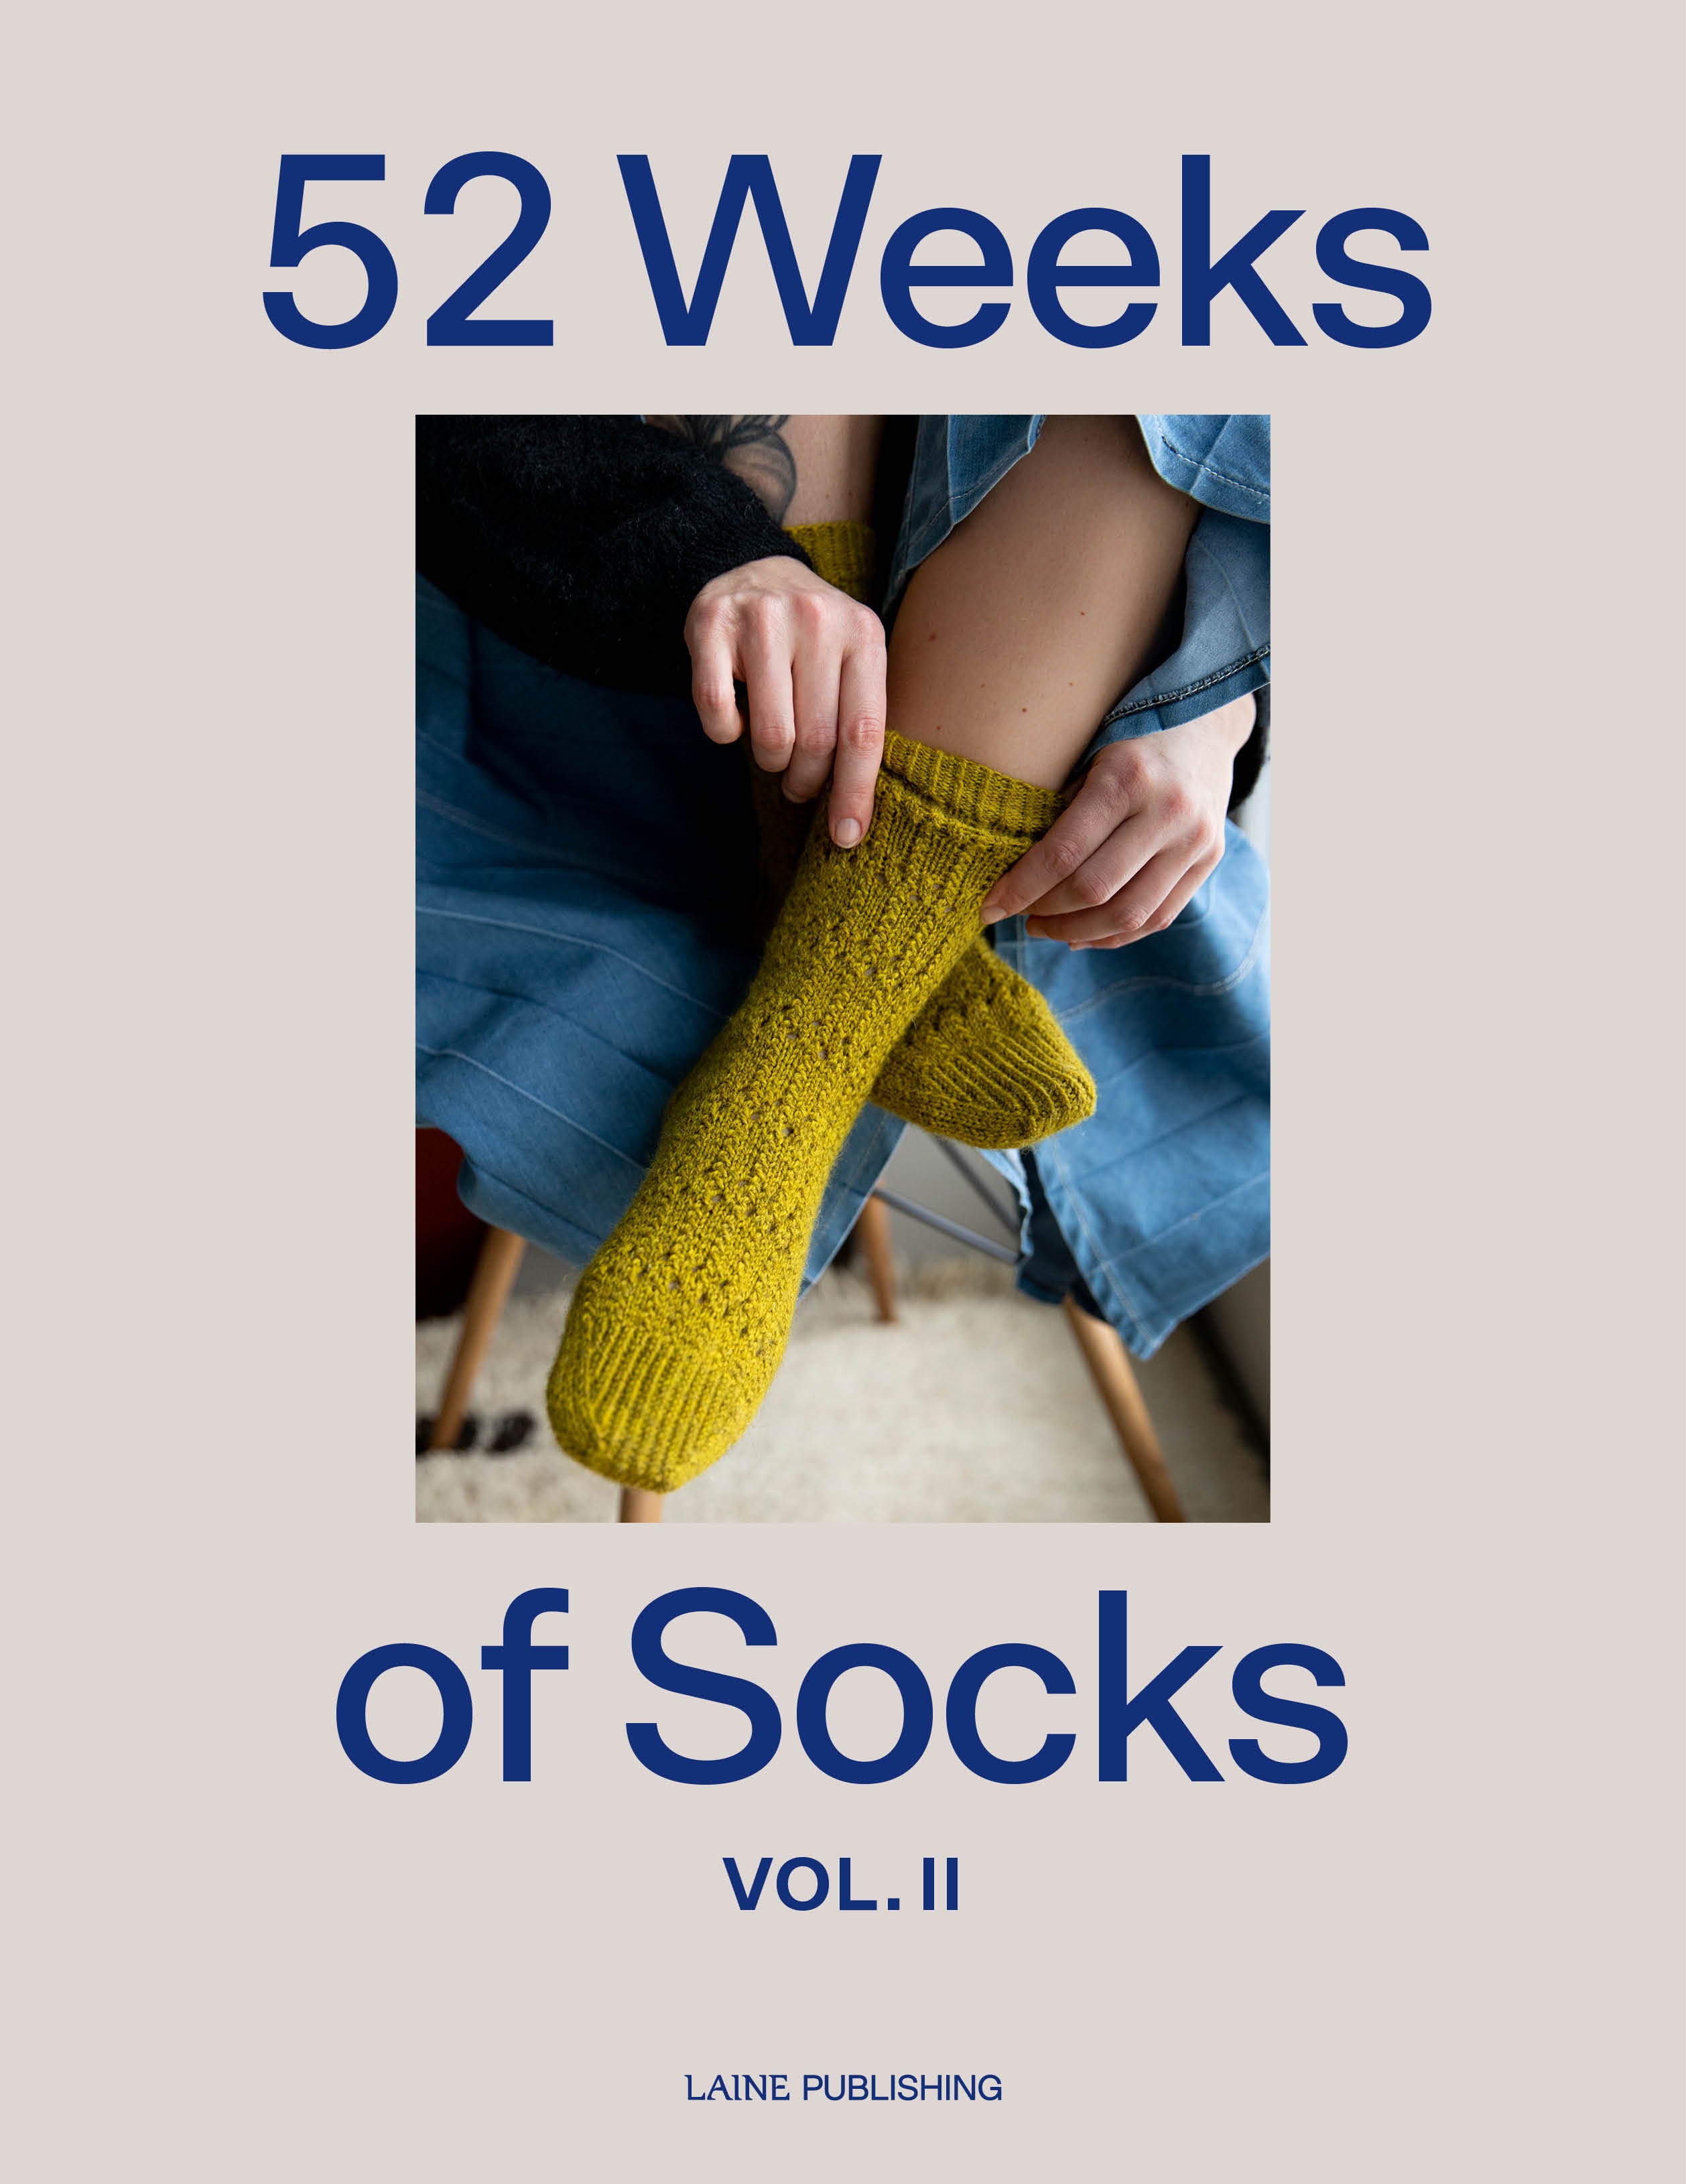 52 Weeks of Socks Volume 2 – The Sated Sheep